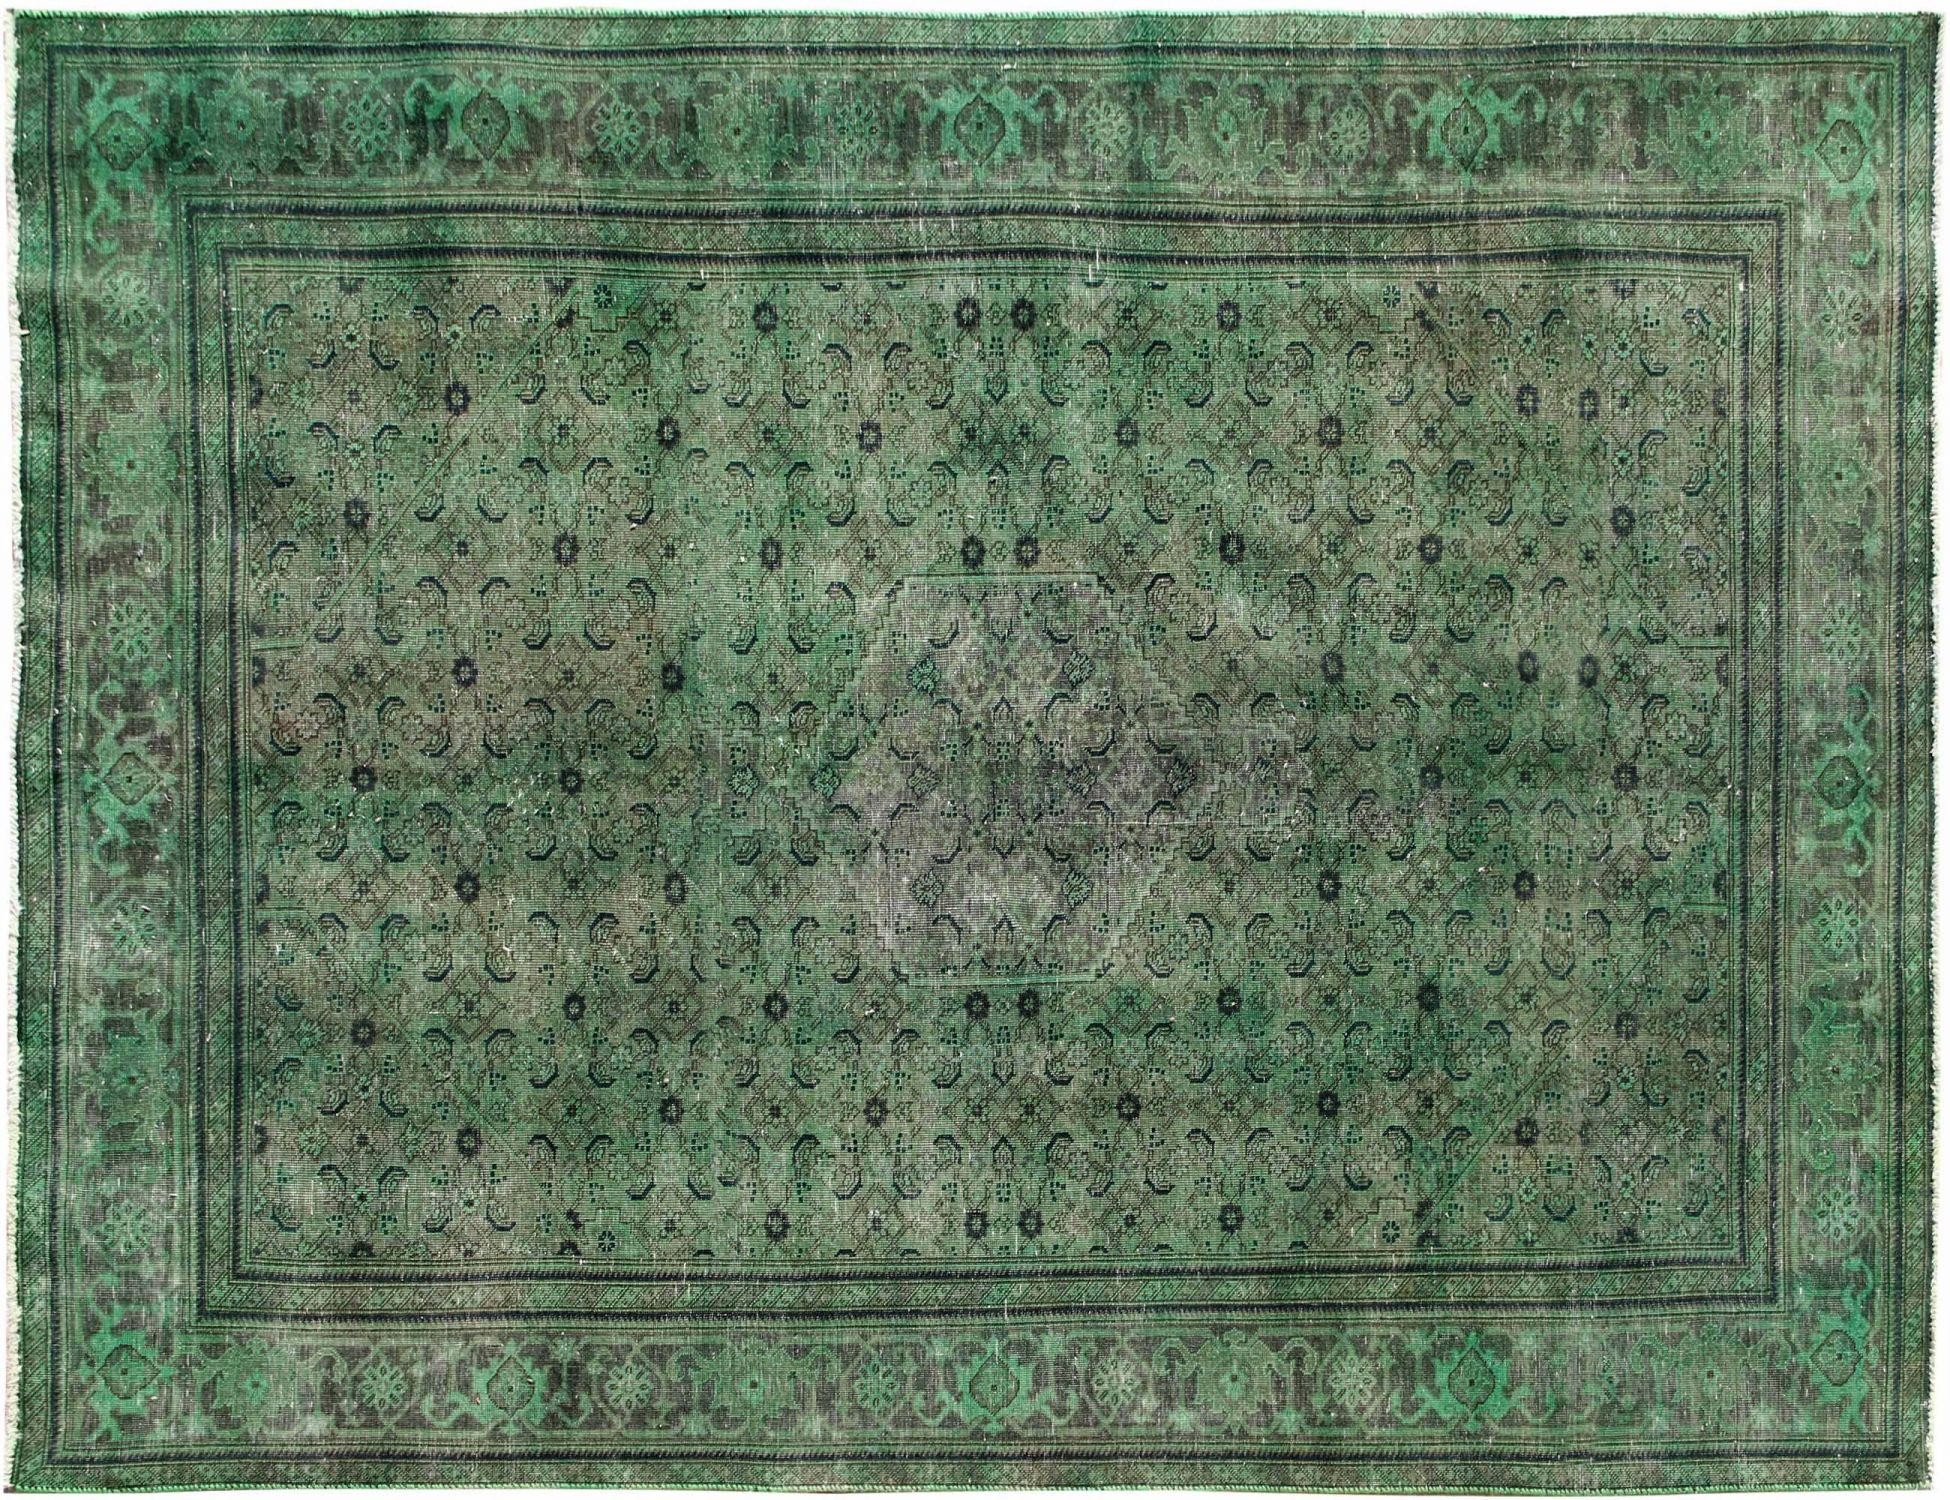 Persischer Vintage Teppich  grün <br/>313 x 213 cm